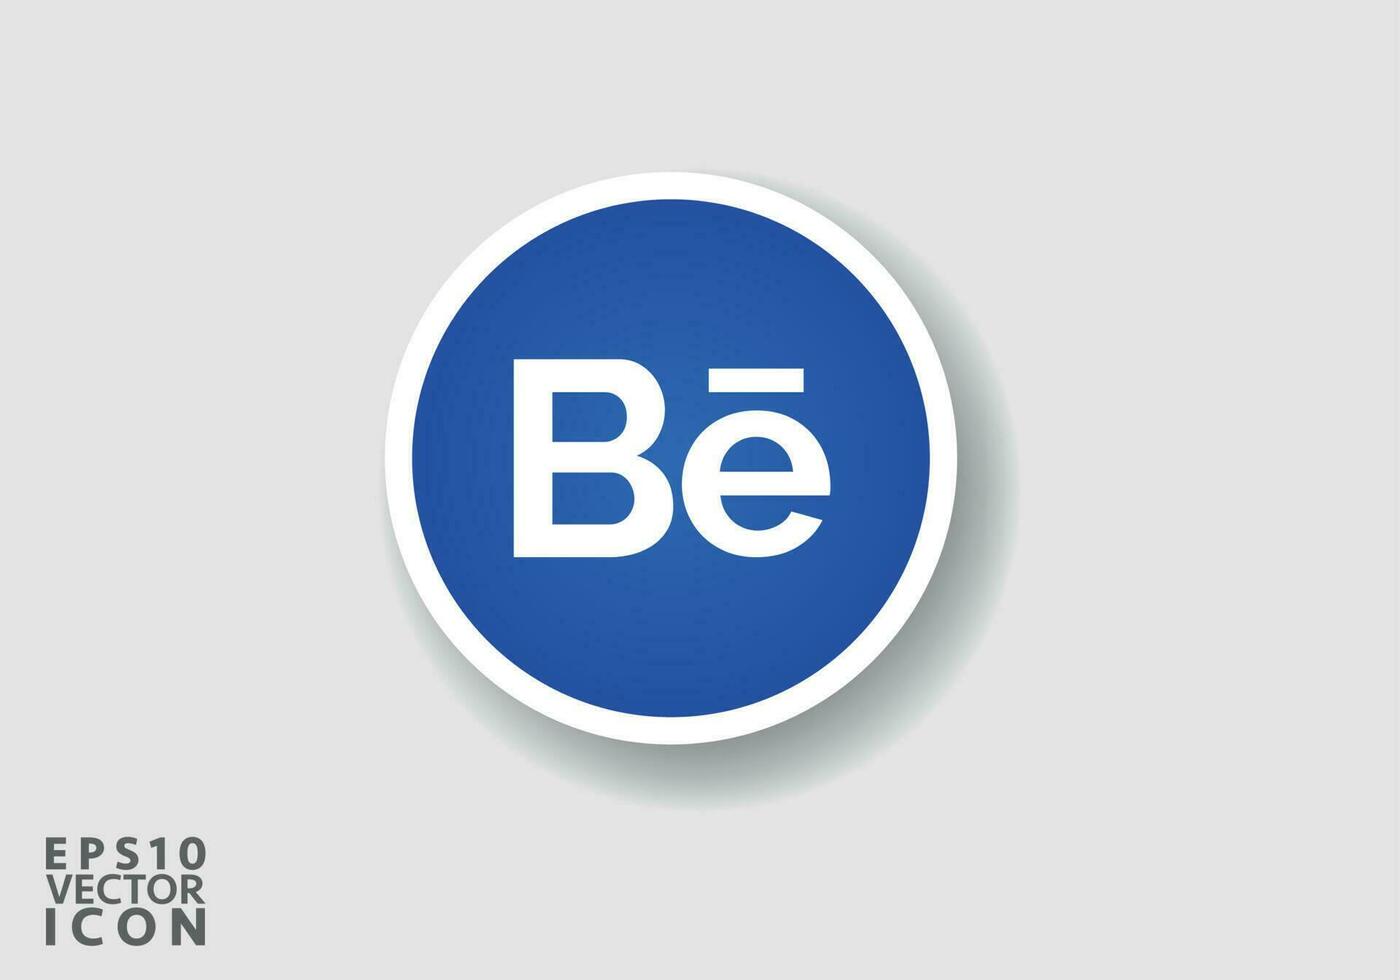 il giro Behance logo sociale media logo. Behance icona. Behance è popolare sociale media. vettore illustrazione.